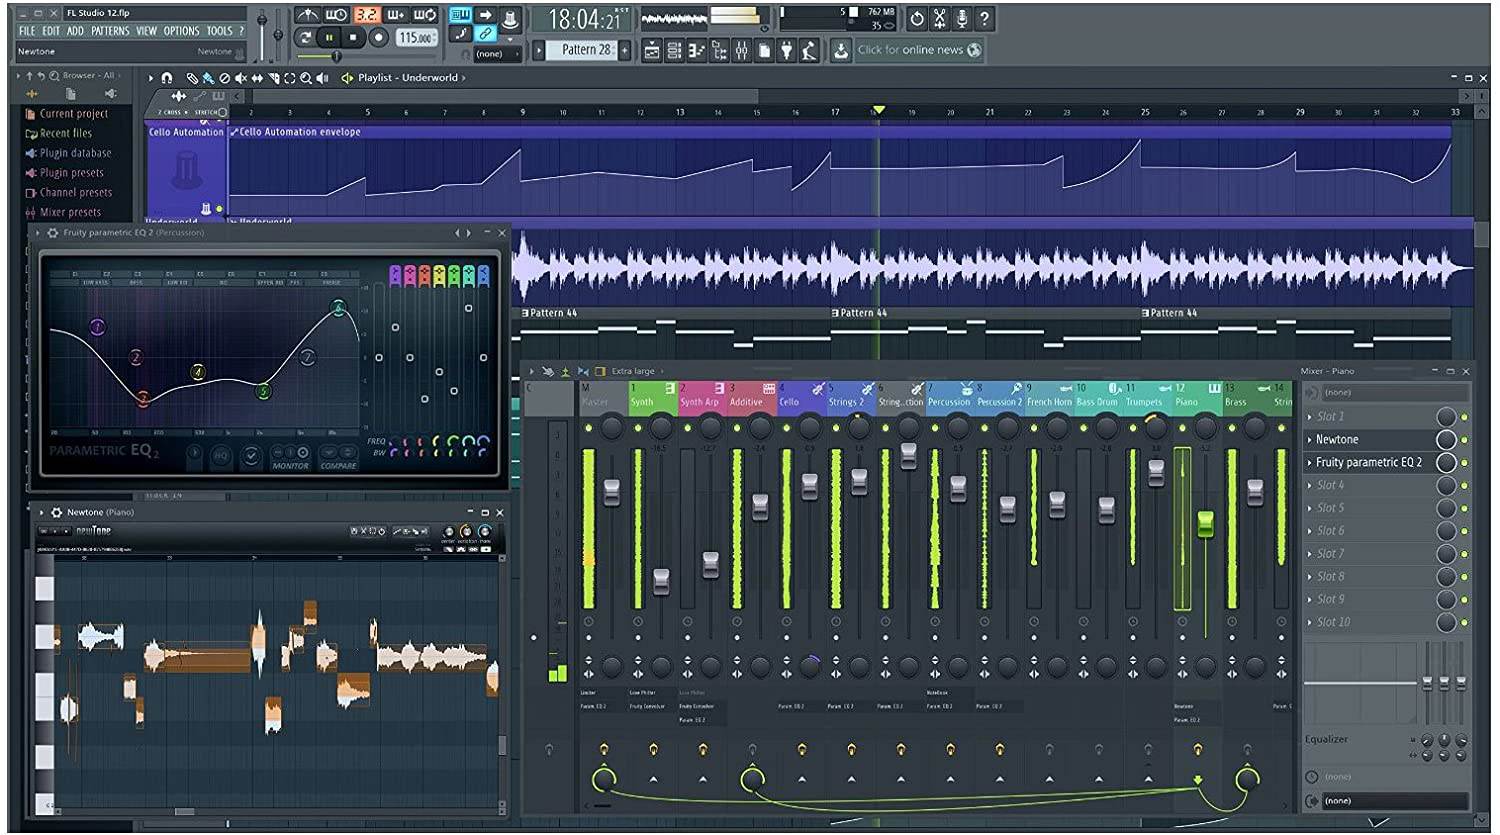 FL Studio 12 - Phần Mềm Thu Âm, Chỉnh Sửa Âm Thanh, Soạn Nhạc Cực Đỉnh